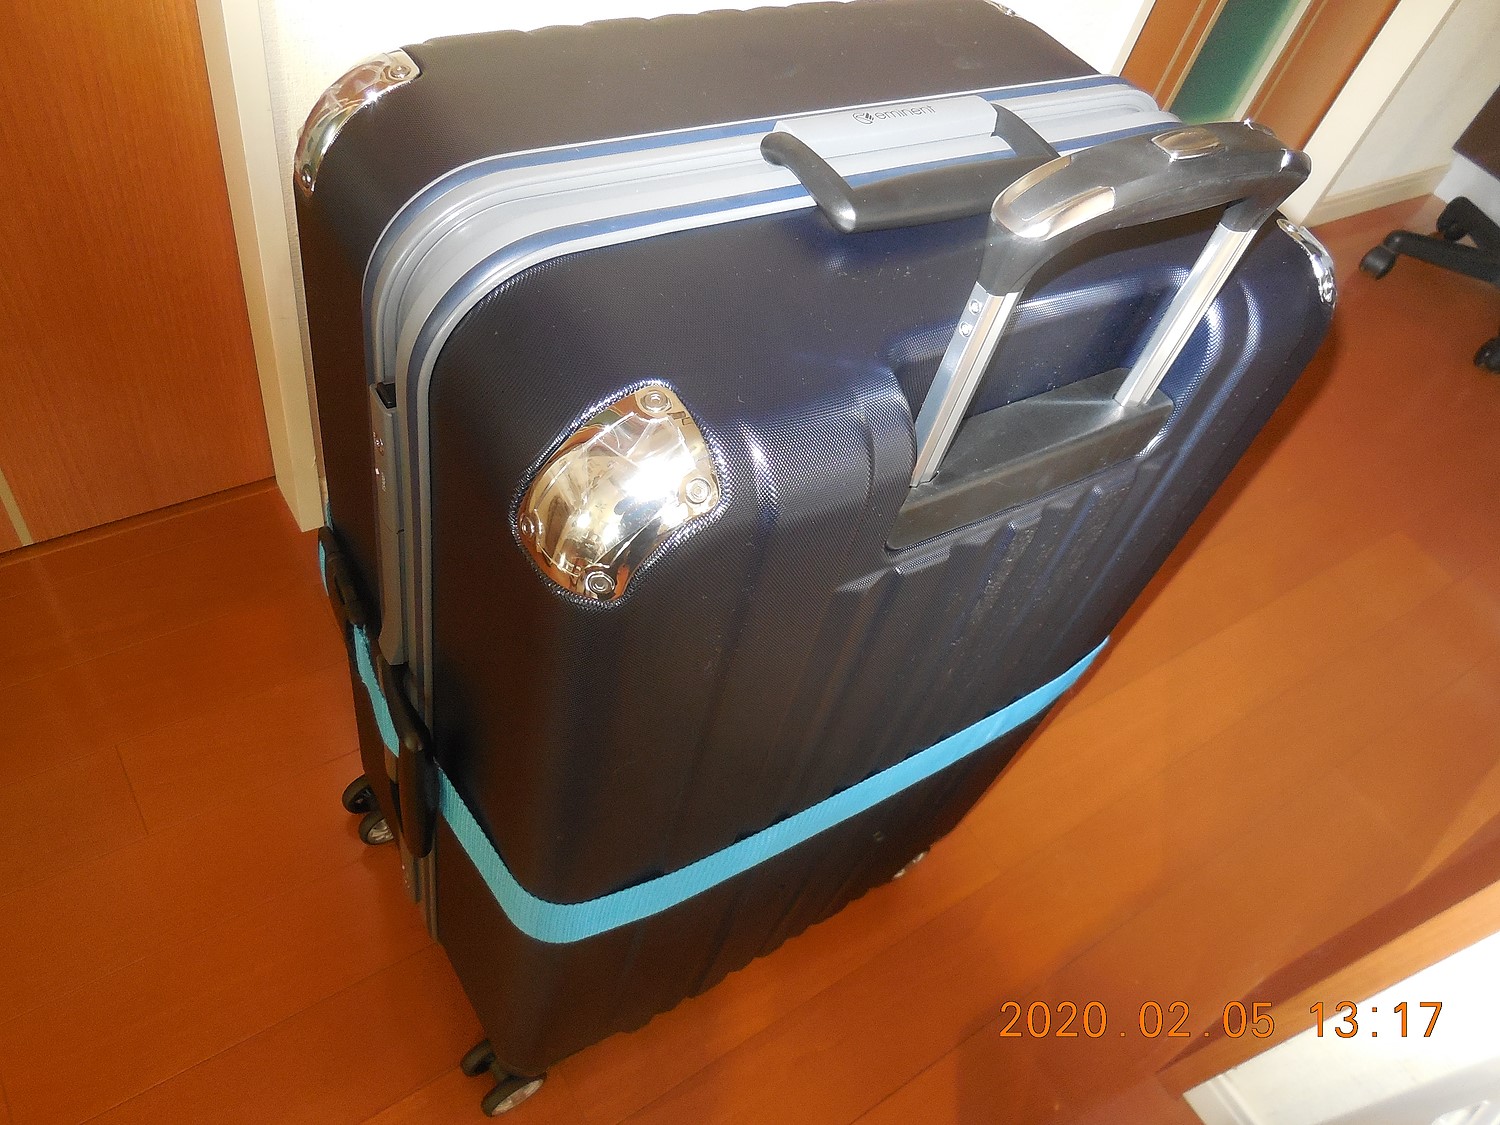 楽天市場 送料無料 特大 スーツケース エミネントプロ Eminent Pro Llサイズ レビューを書いてスーツケースベルトプレゼント 電脳ショッピング みんなのレビュー 口コミ